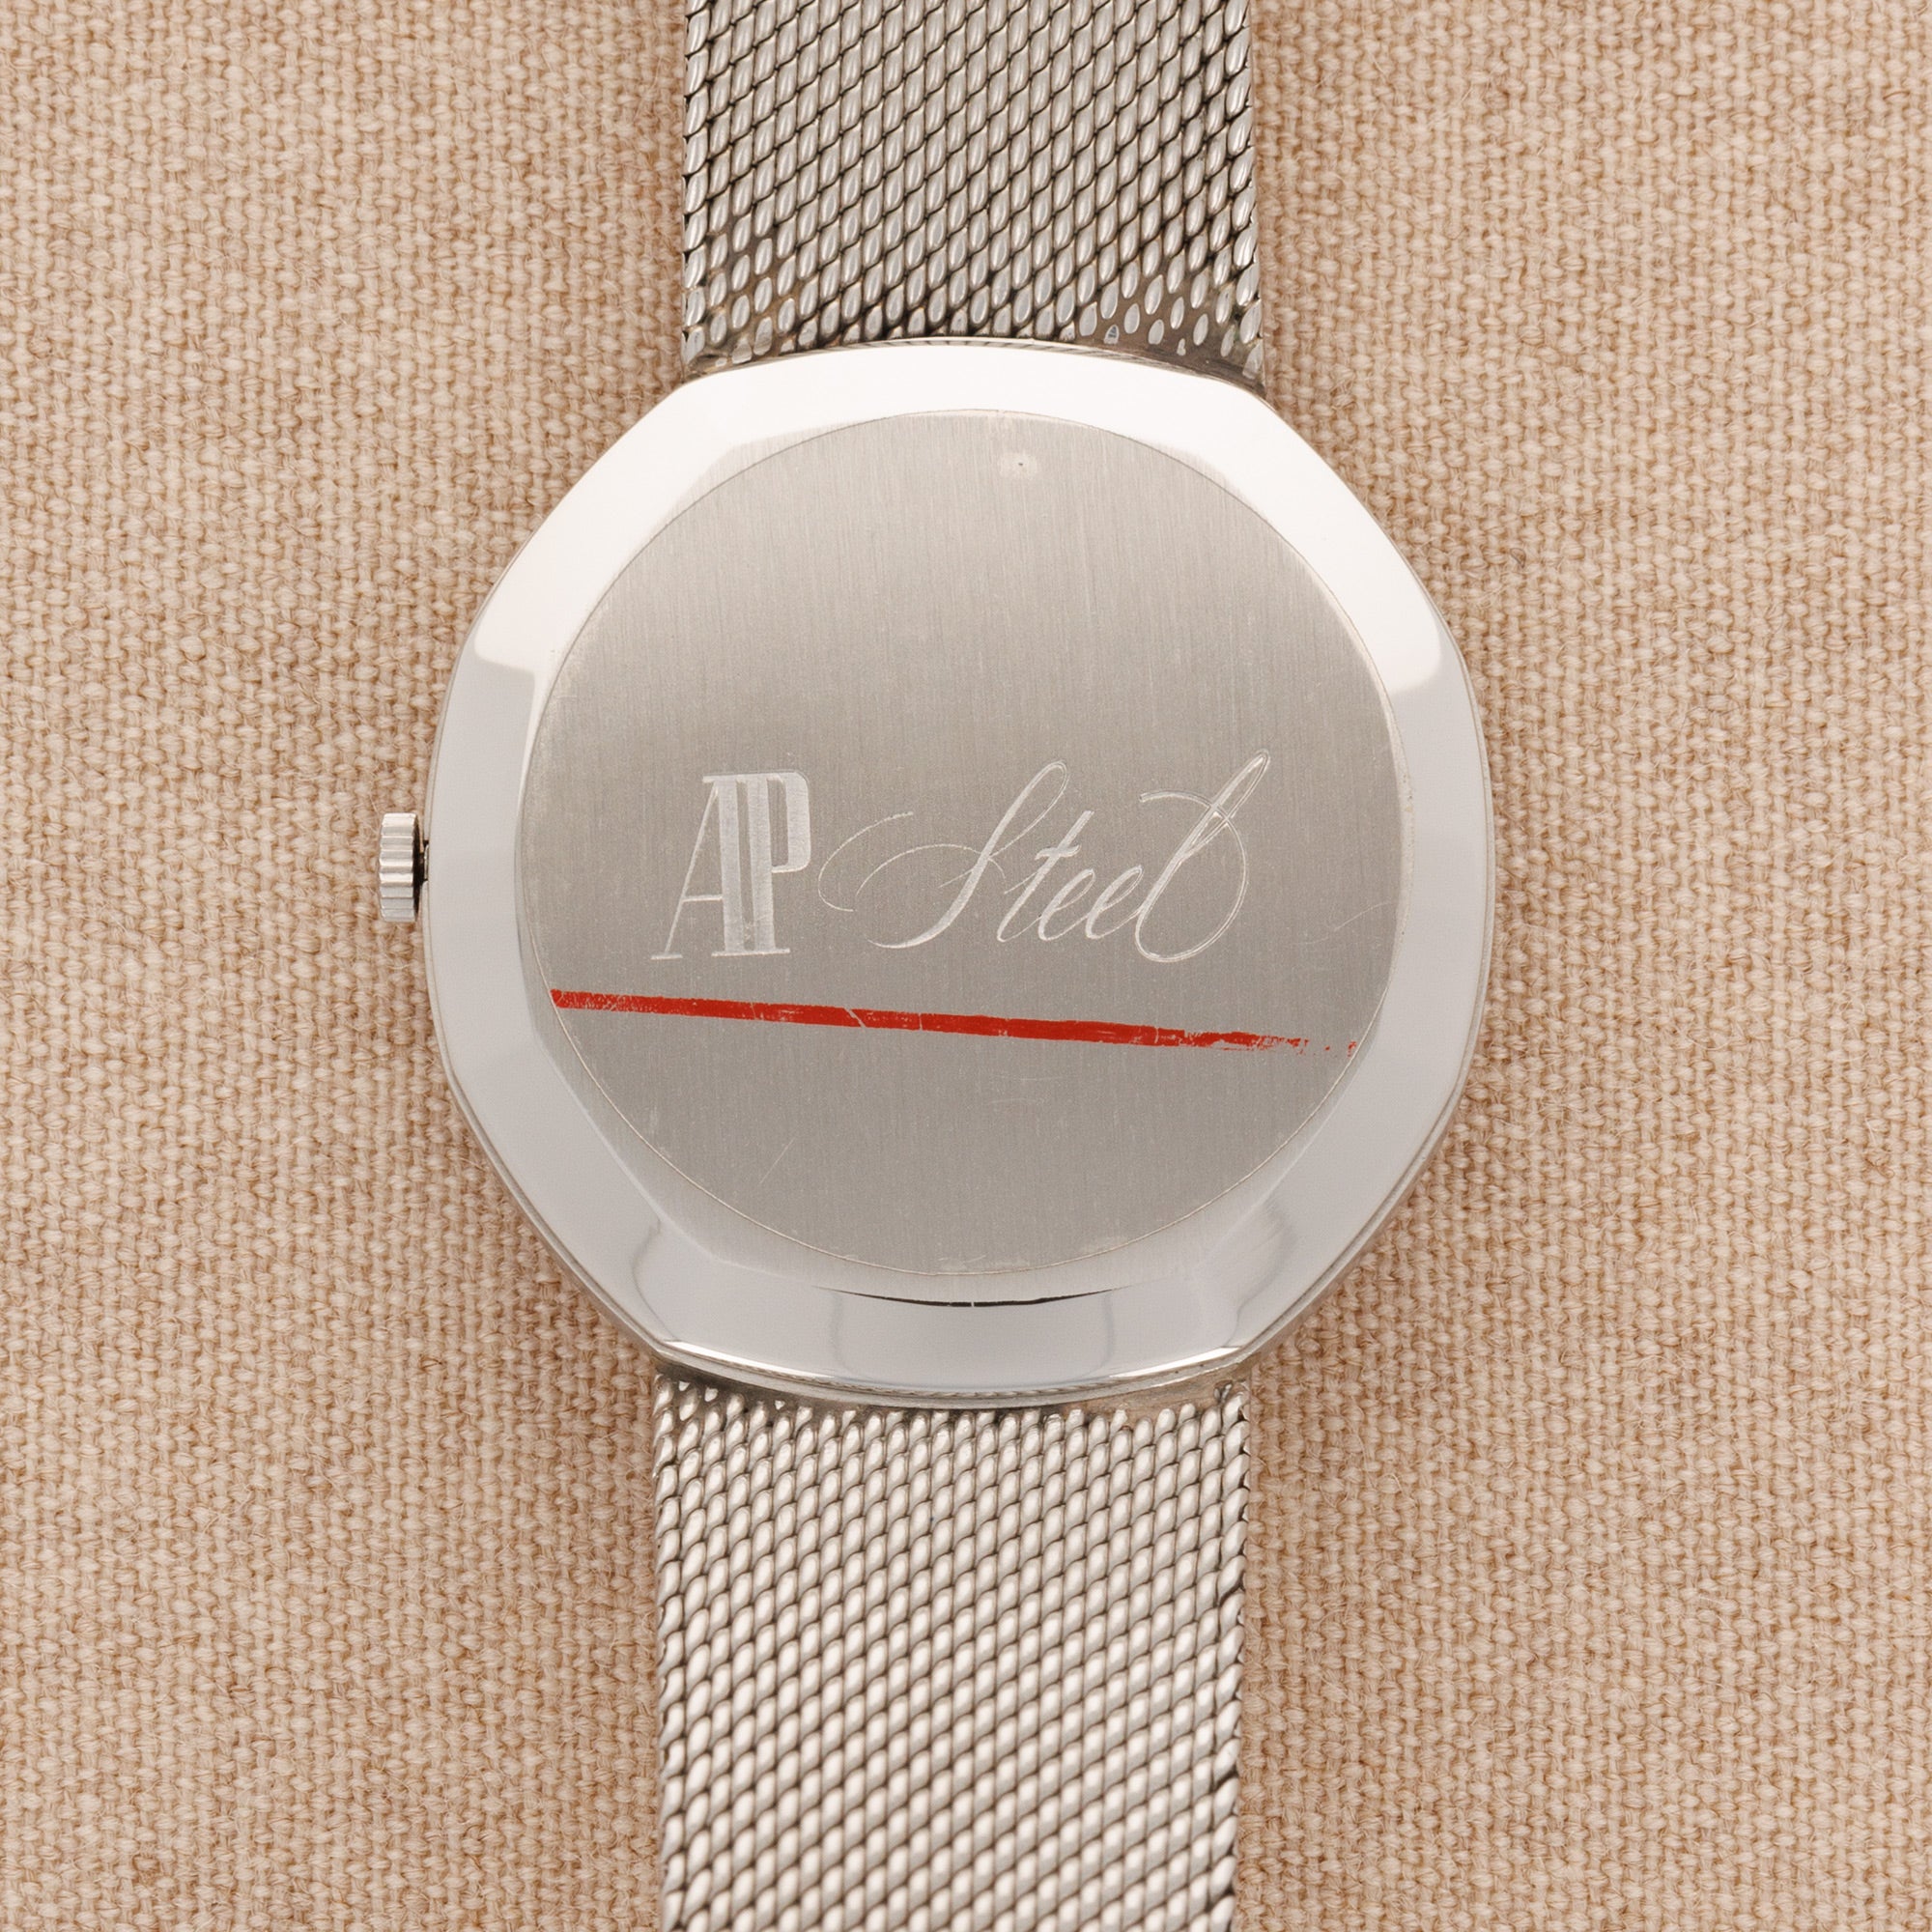 Audemars Piguet - Audemars Piguet Steel Automatic Octagonal Watch Ref. 4010 - The Keystone Watches